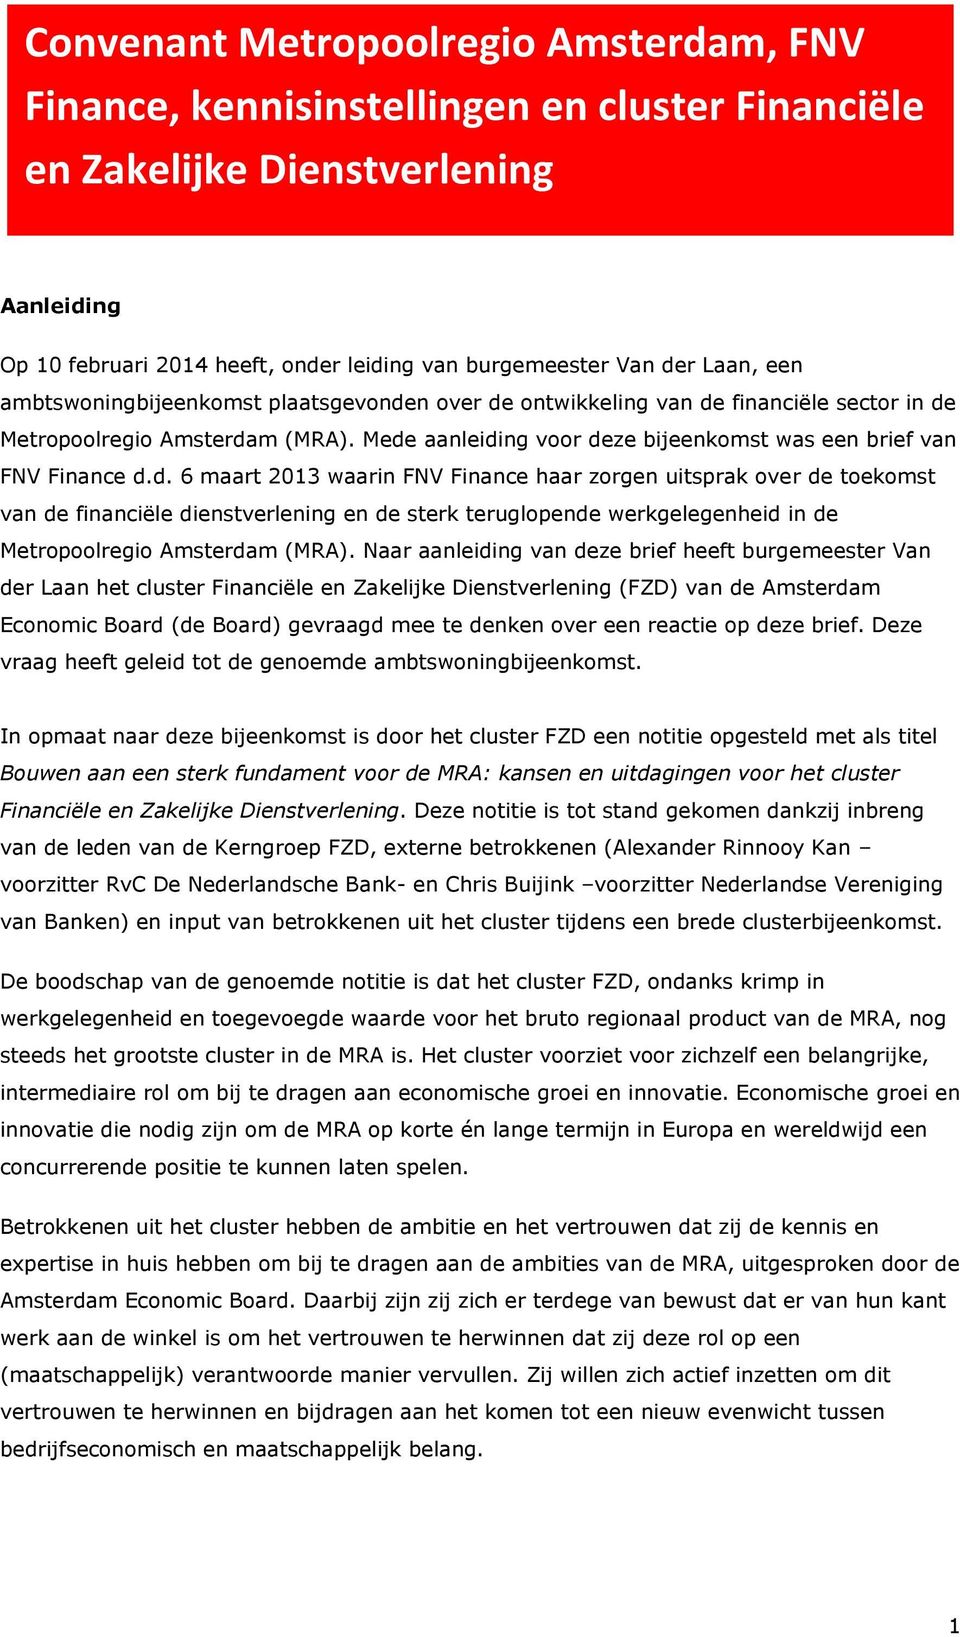 Mede aanleiding voor deze bijeenkomst was een brief van FNV Finance d.d. 6 maart 2013 waarin FNV Finance haar zorgen uitsprak over de toekomst van de financiële dienstverlening en de sterk teruglopende werkgelegenheid in de Metropoolregio Amsterdam (MRA).